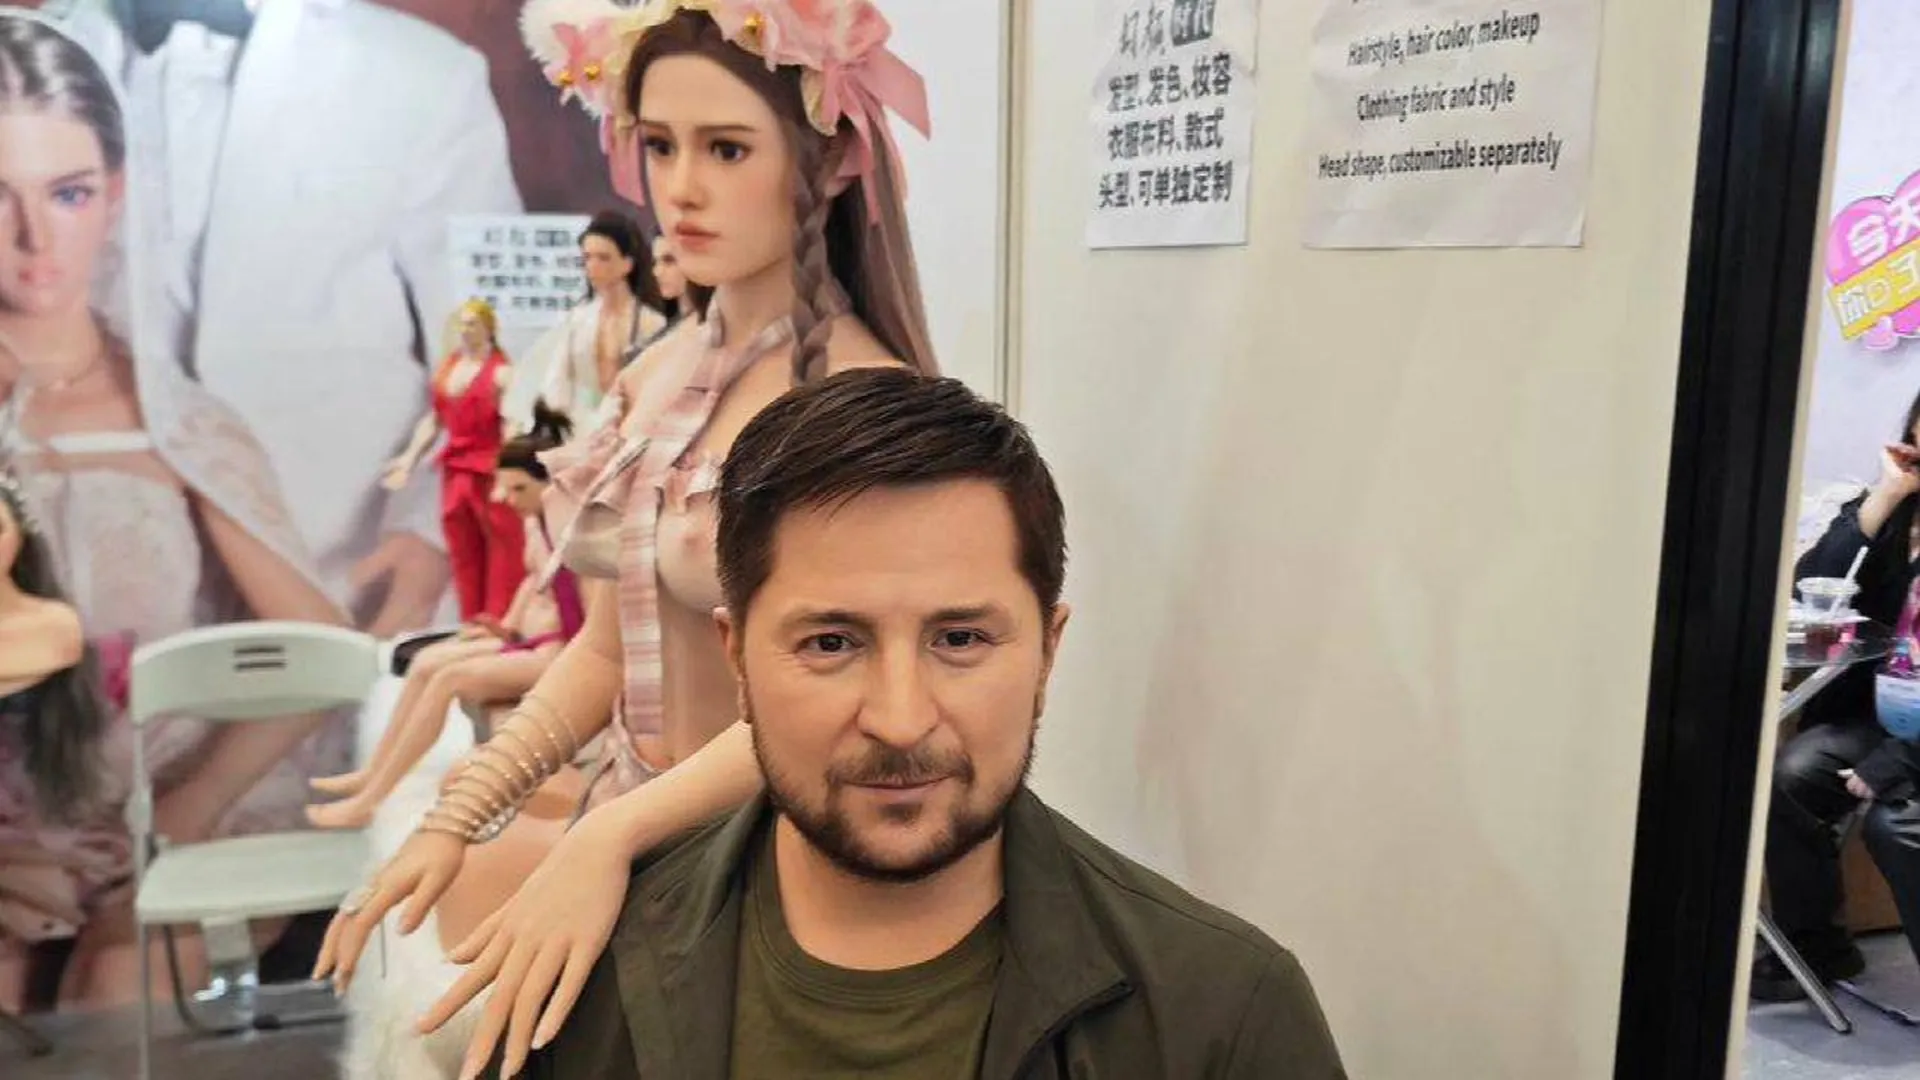 Резиновая кукла Зеленского стала экспонатом выставки секс-игрушек